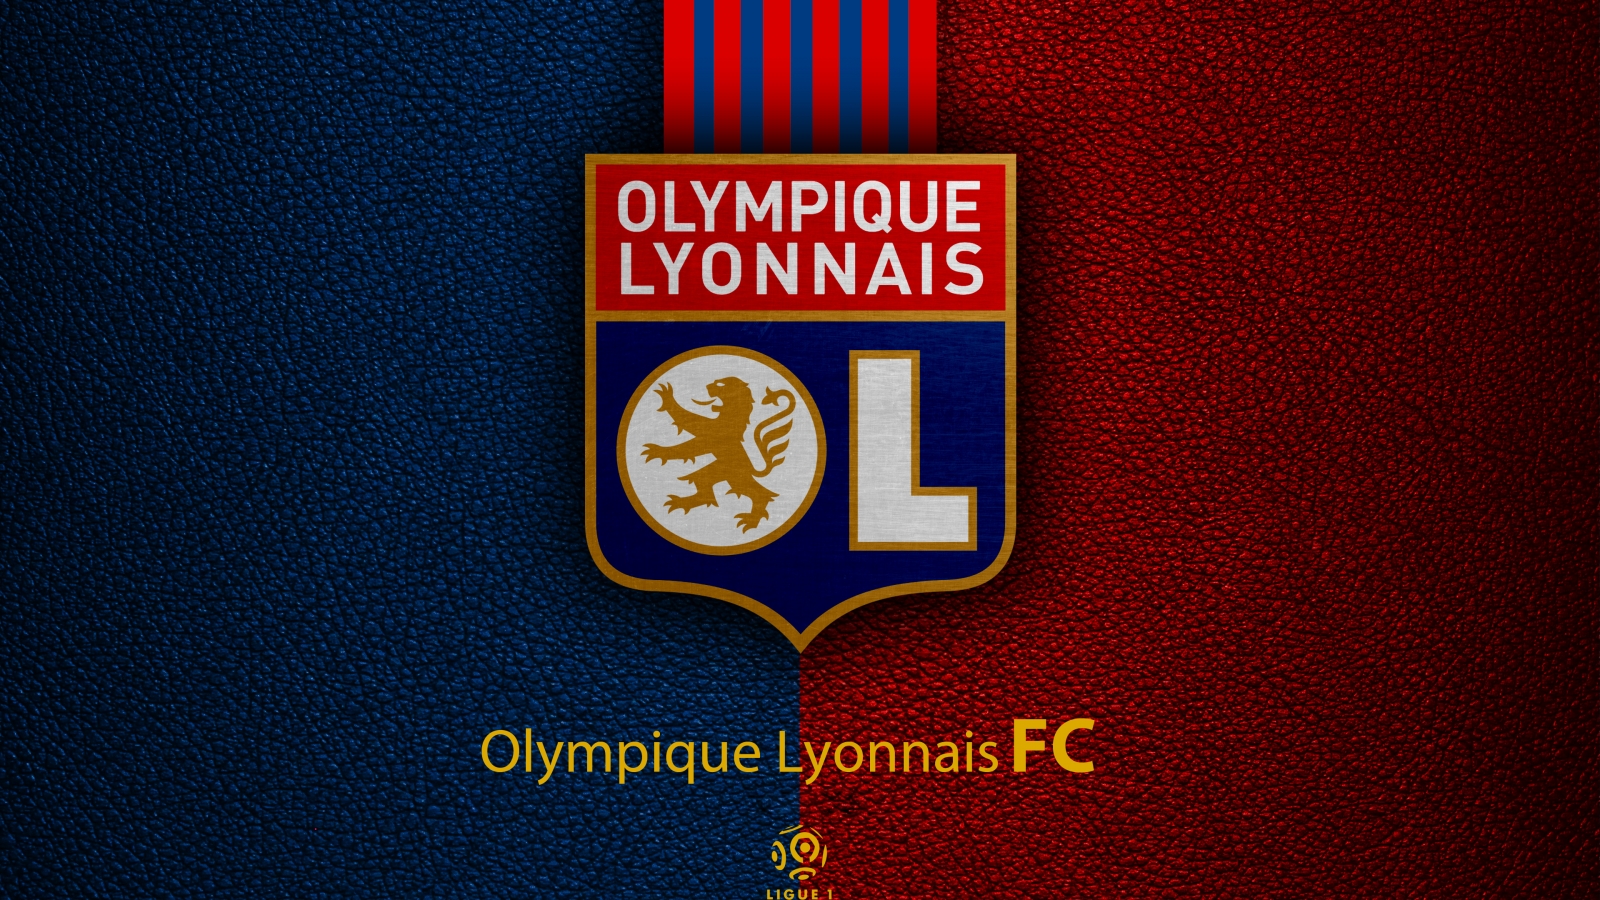 Olympique Lyonnais 4k Ultra HD Wallpaper Background